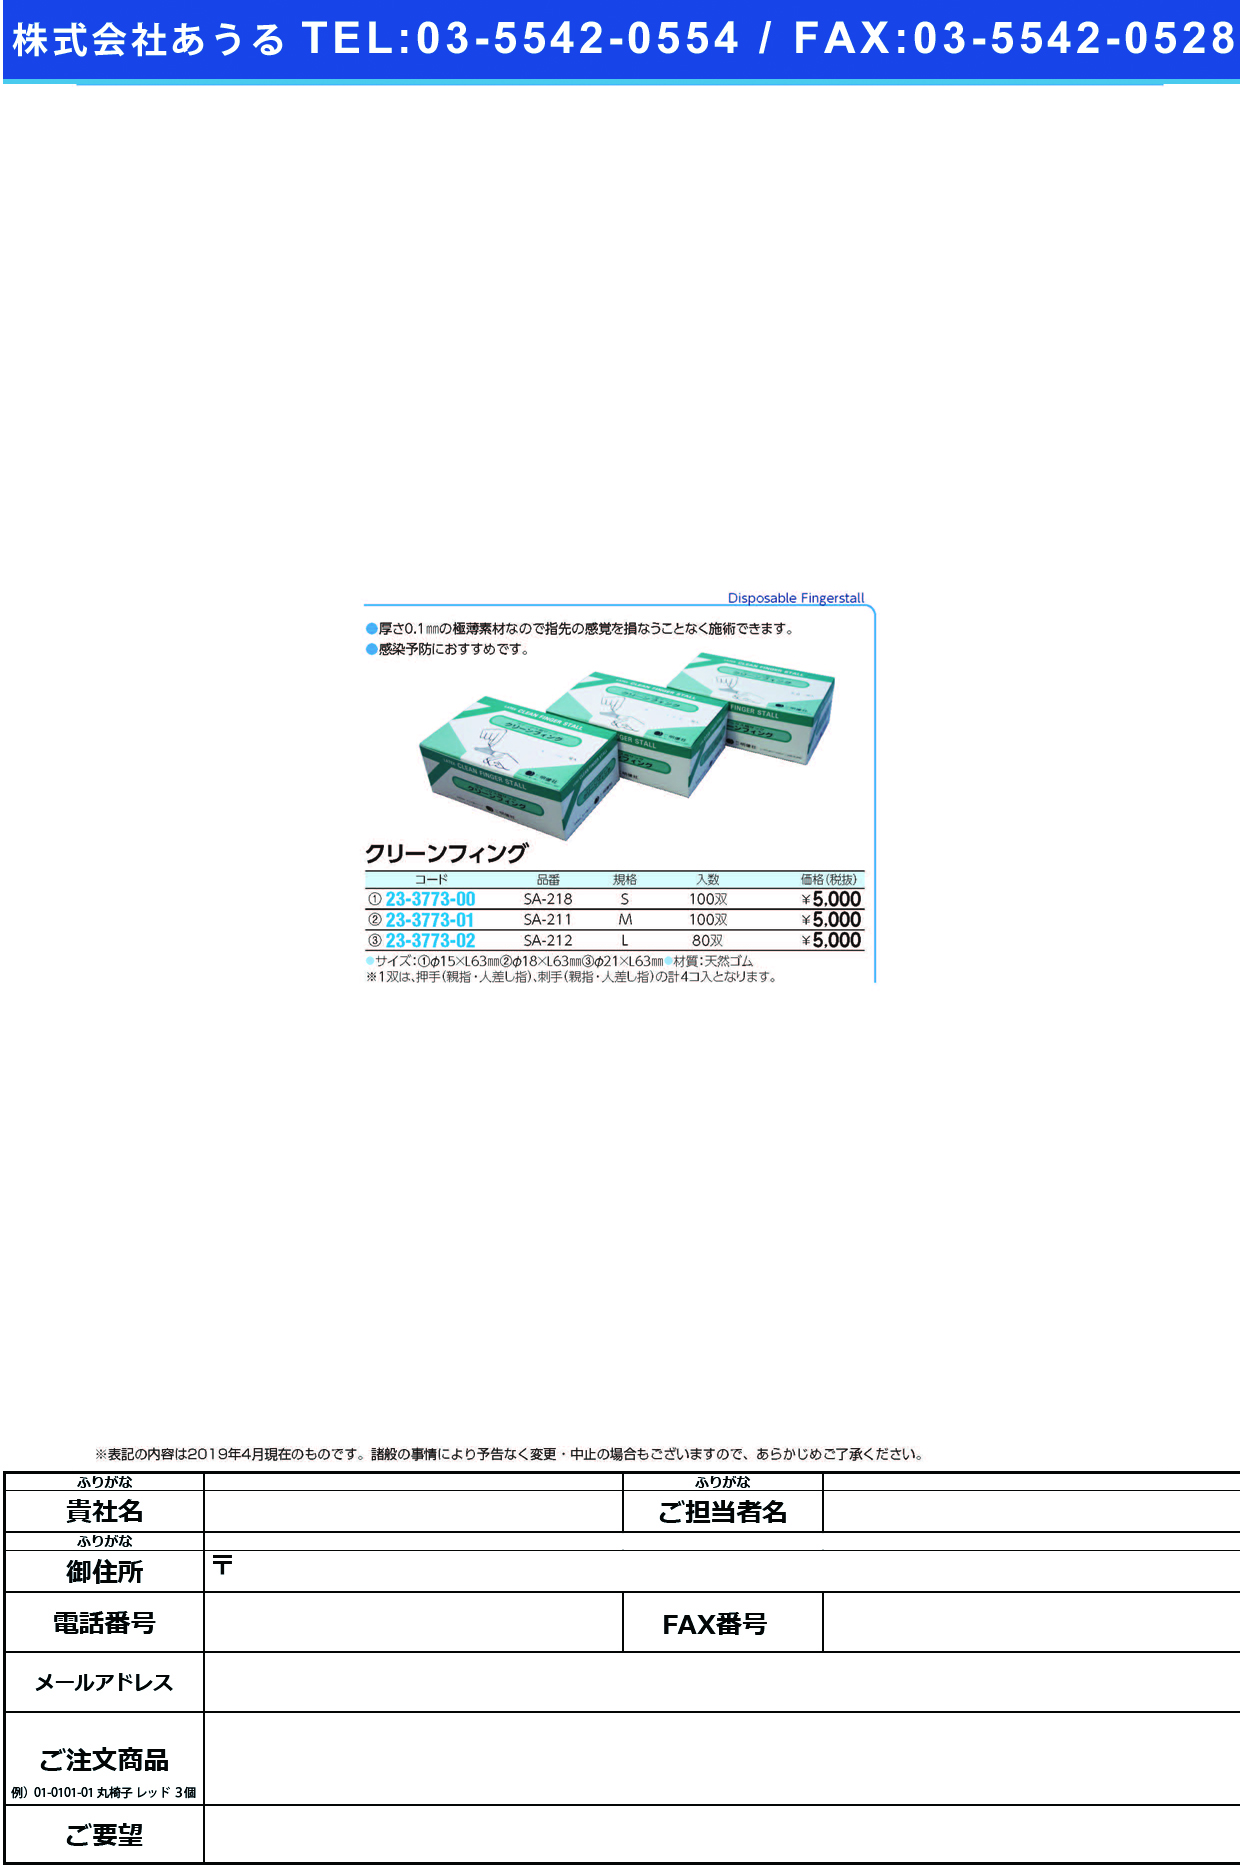 (23-3773-01)クリーンフィング（Ｍ） SA-211(100ｿｳｲﾘ) ｸﾘｰﾝﾌｨﾝｸﾞ(M)【1箱単位】【2019年カタログ商品】